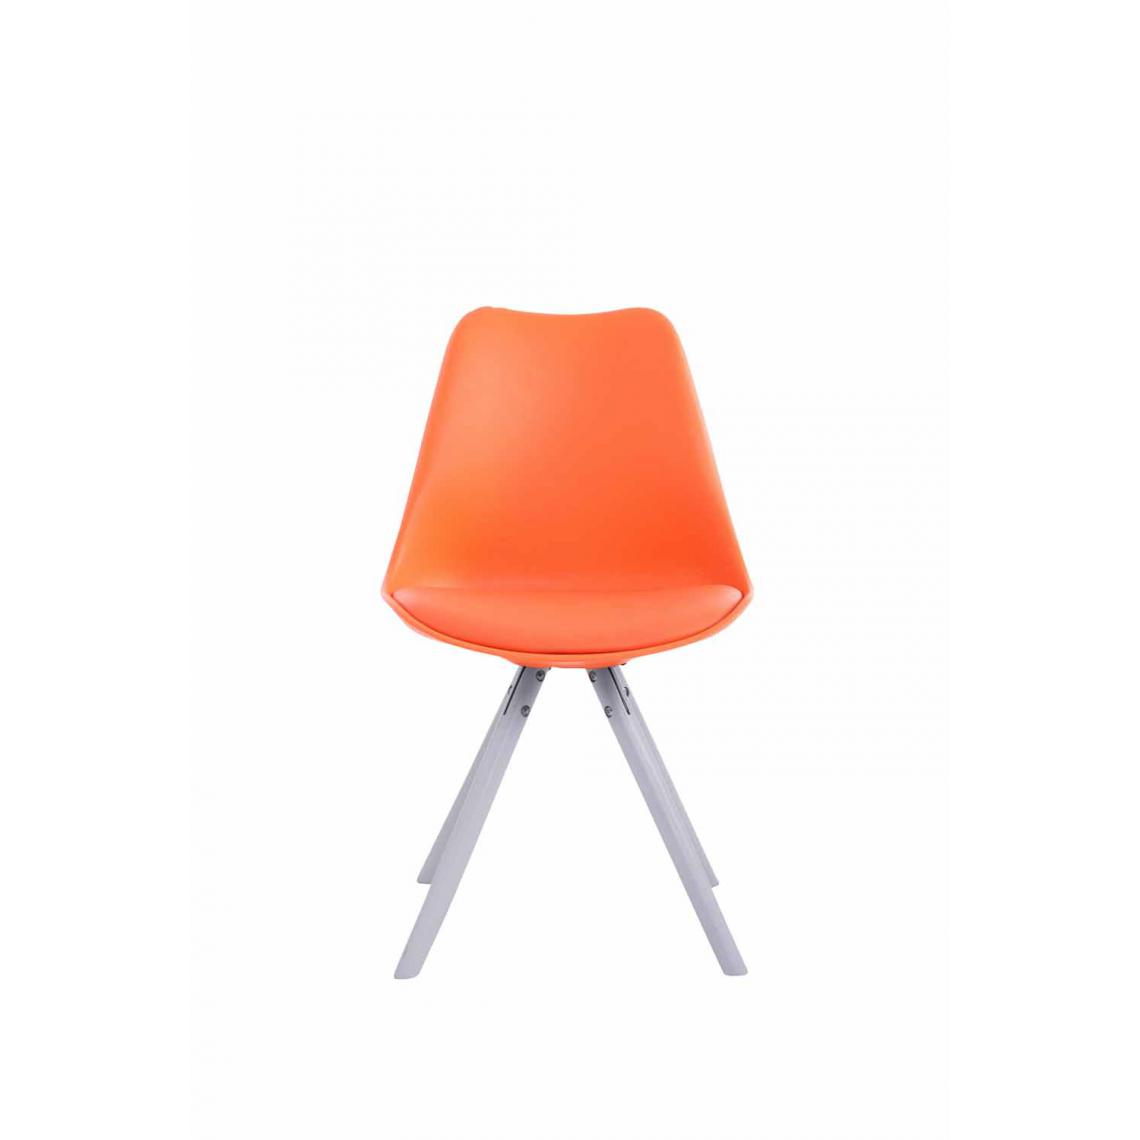 Icaverne - Superbe Chaise visiteur selection Katmandou cuir synthétique rond blanc couleur Orange - Chaises